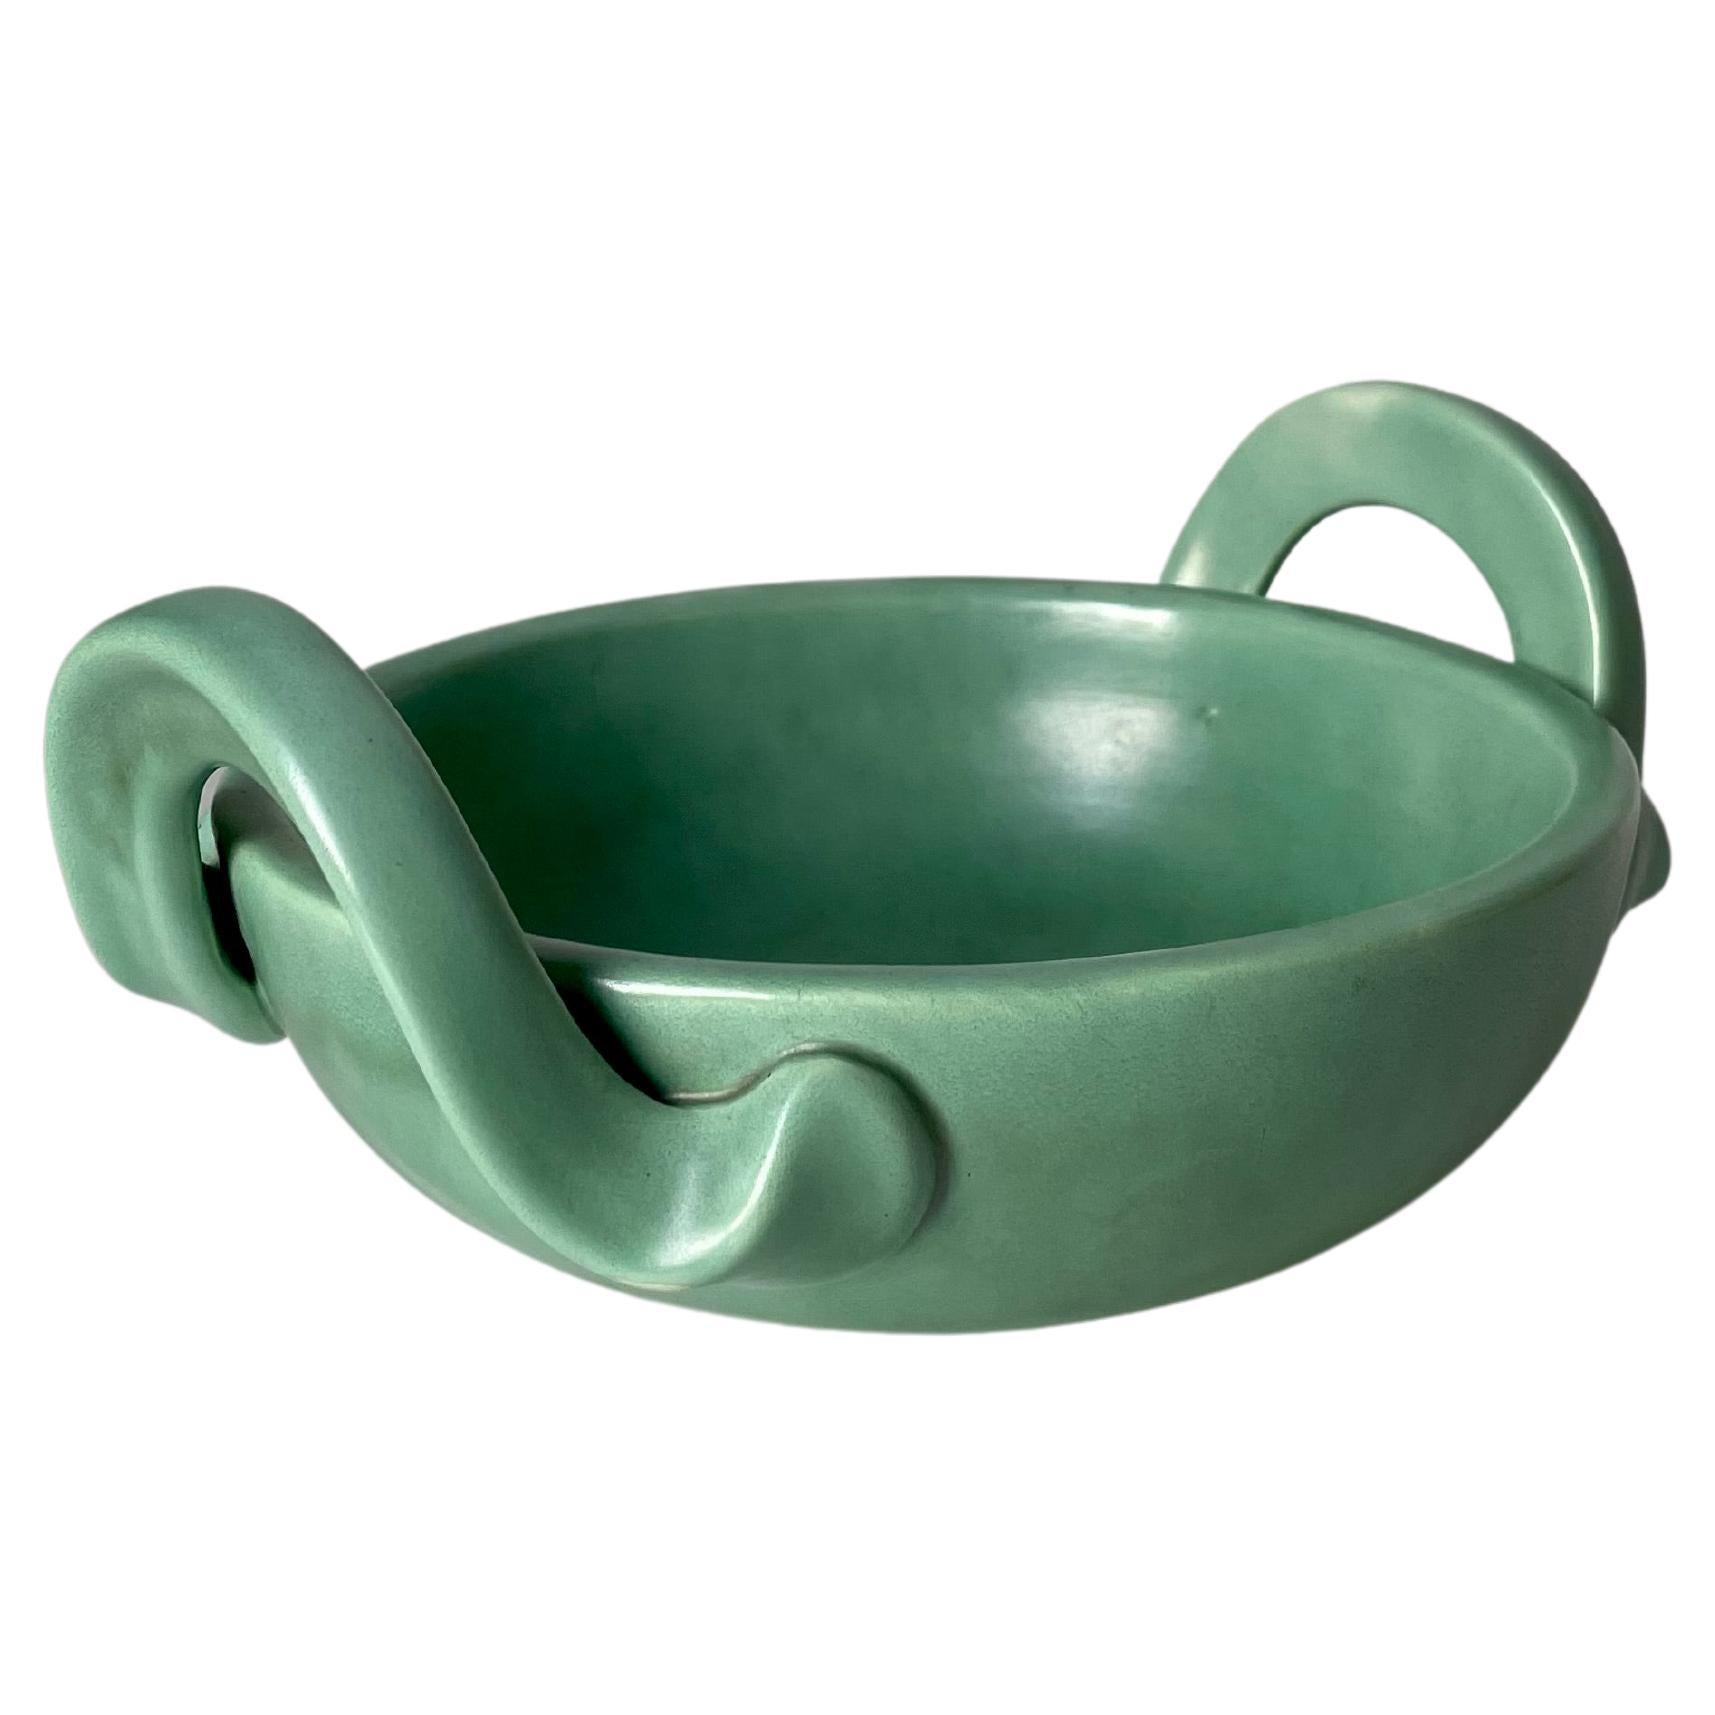 Arthur Percy 1940s Celadon Green Art Nouveau Handle Bowl, Sweden For Sale